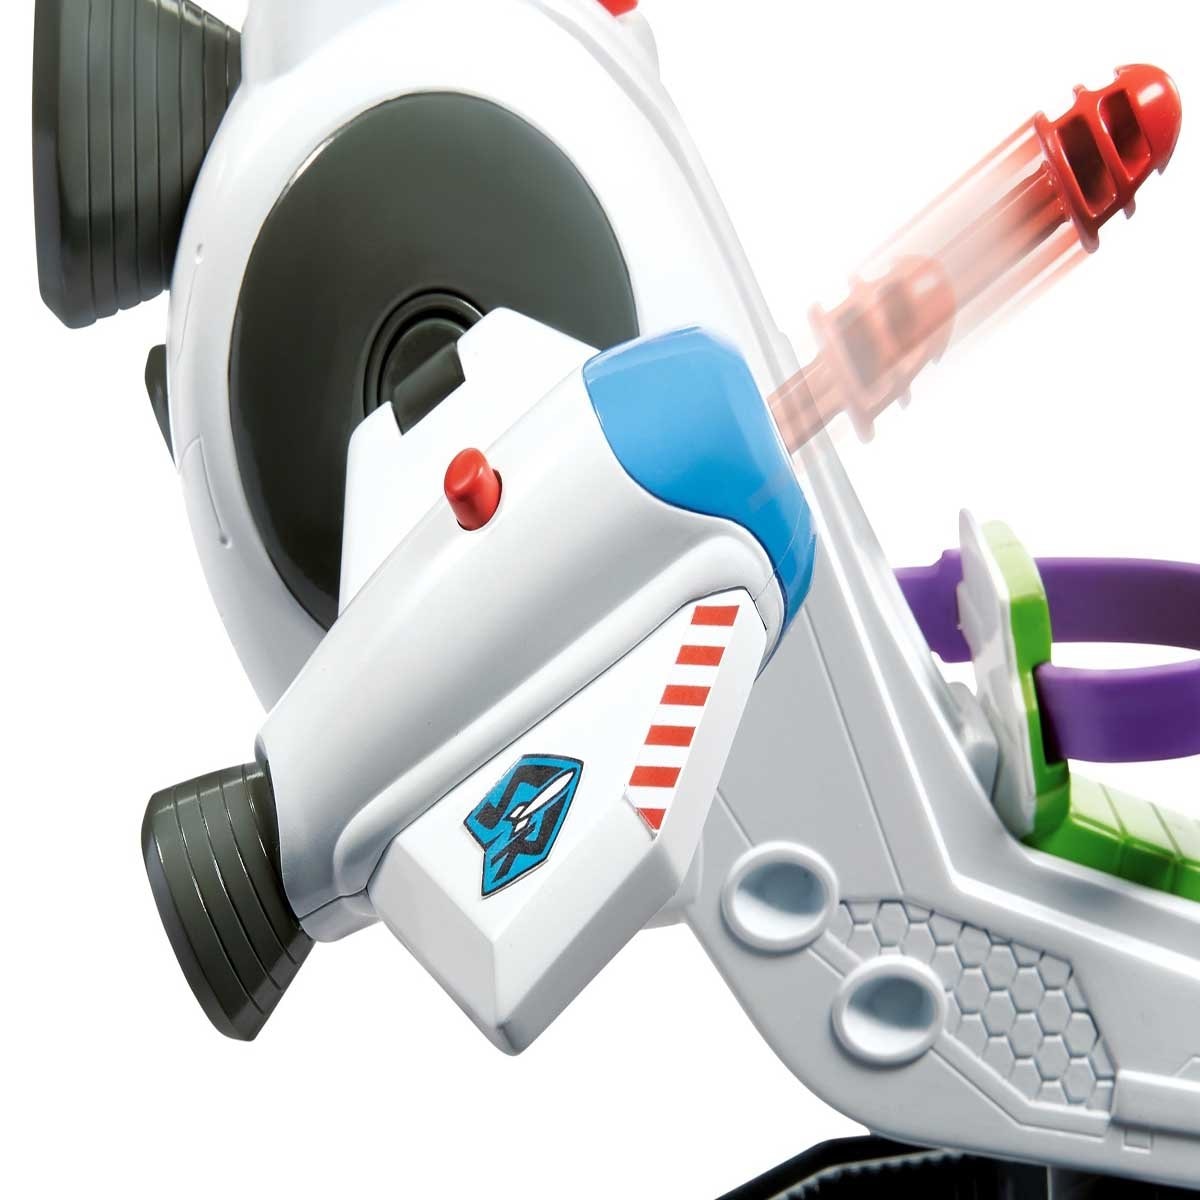 Nave Exploradora Espacial de Buzz Lightyear Toy Story